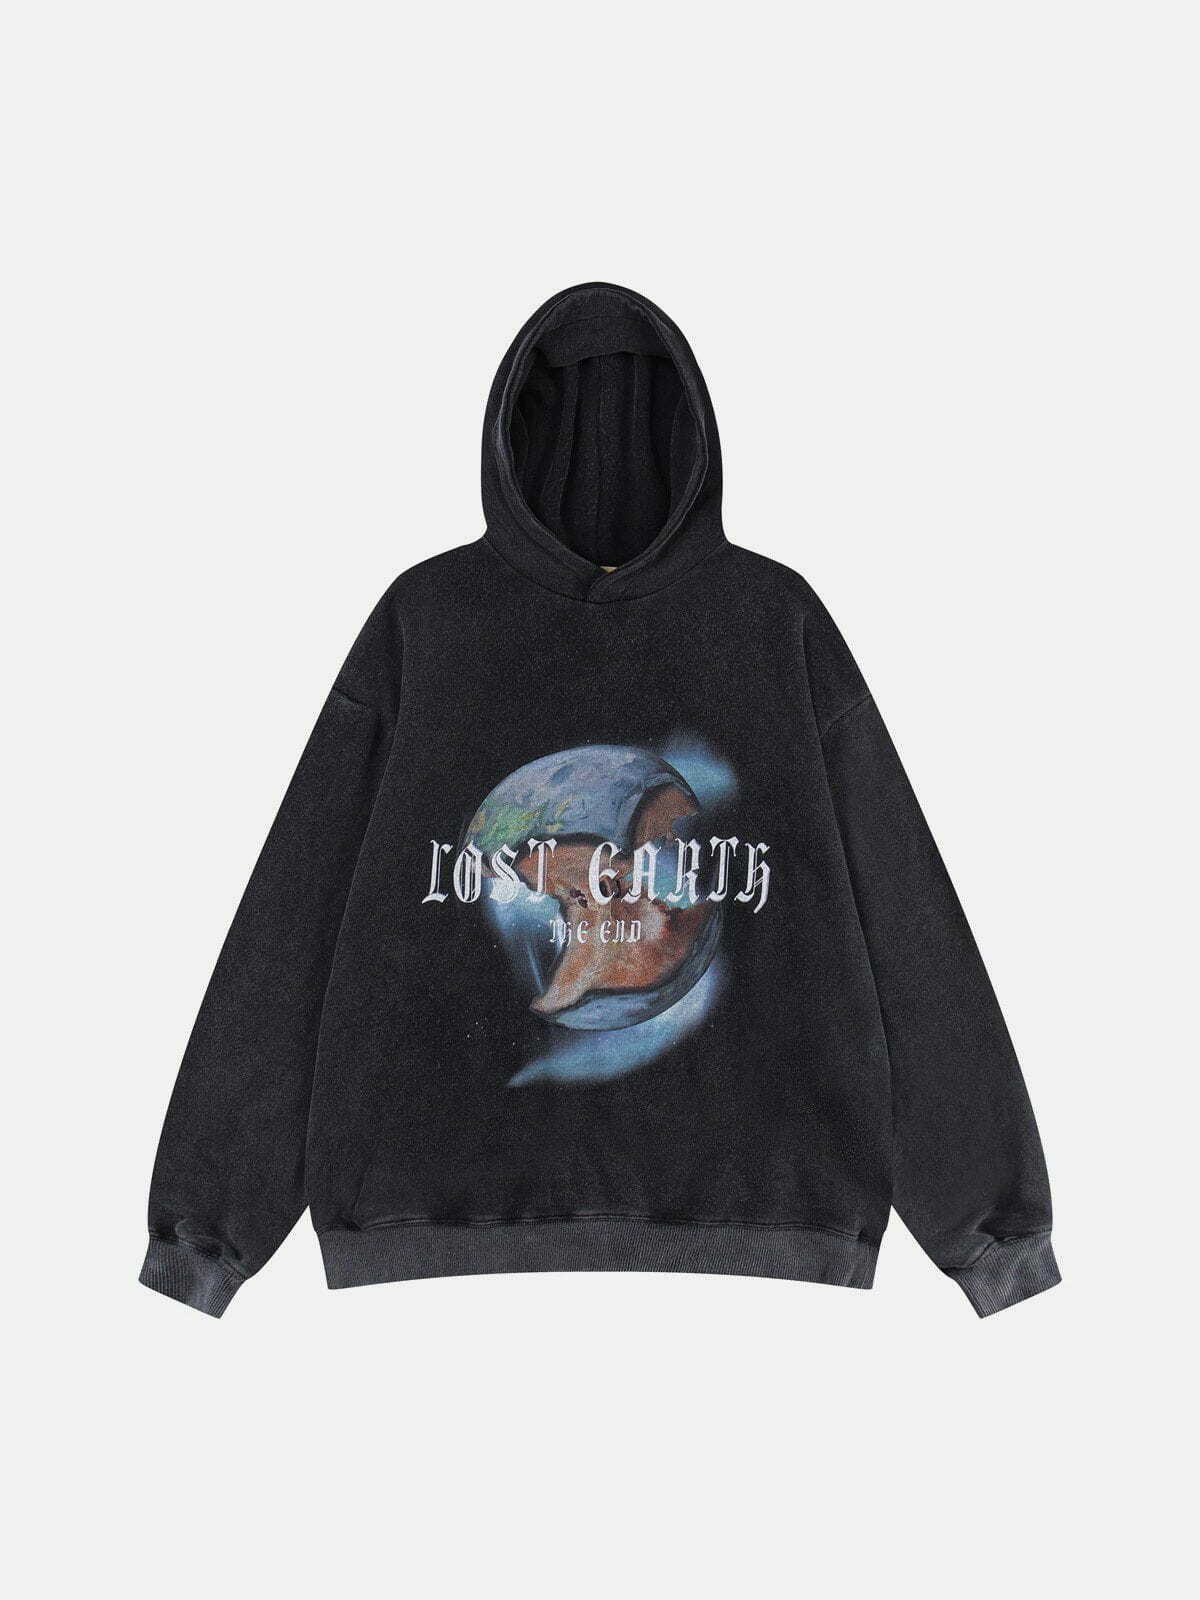 earth apple print hoodie vibrant & eclectic streetwear 2146